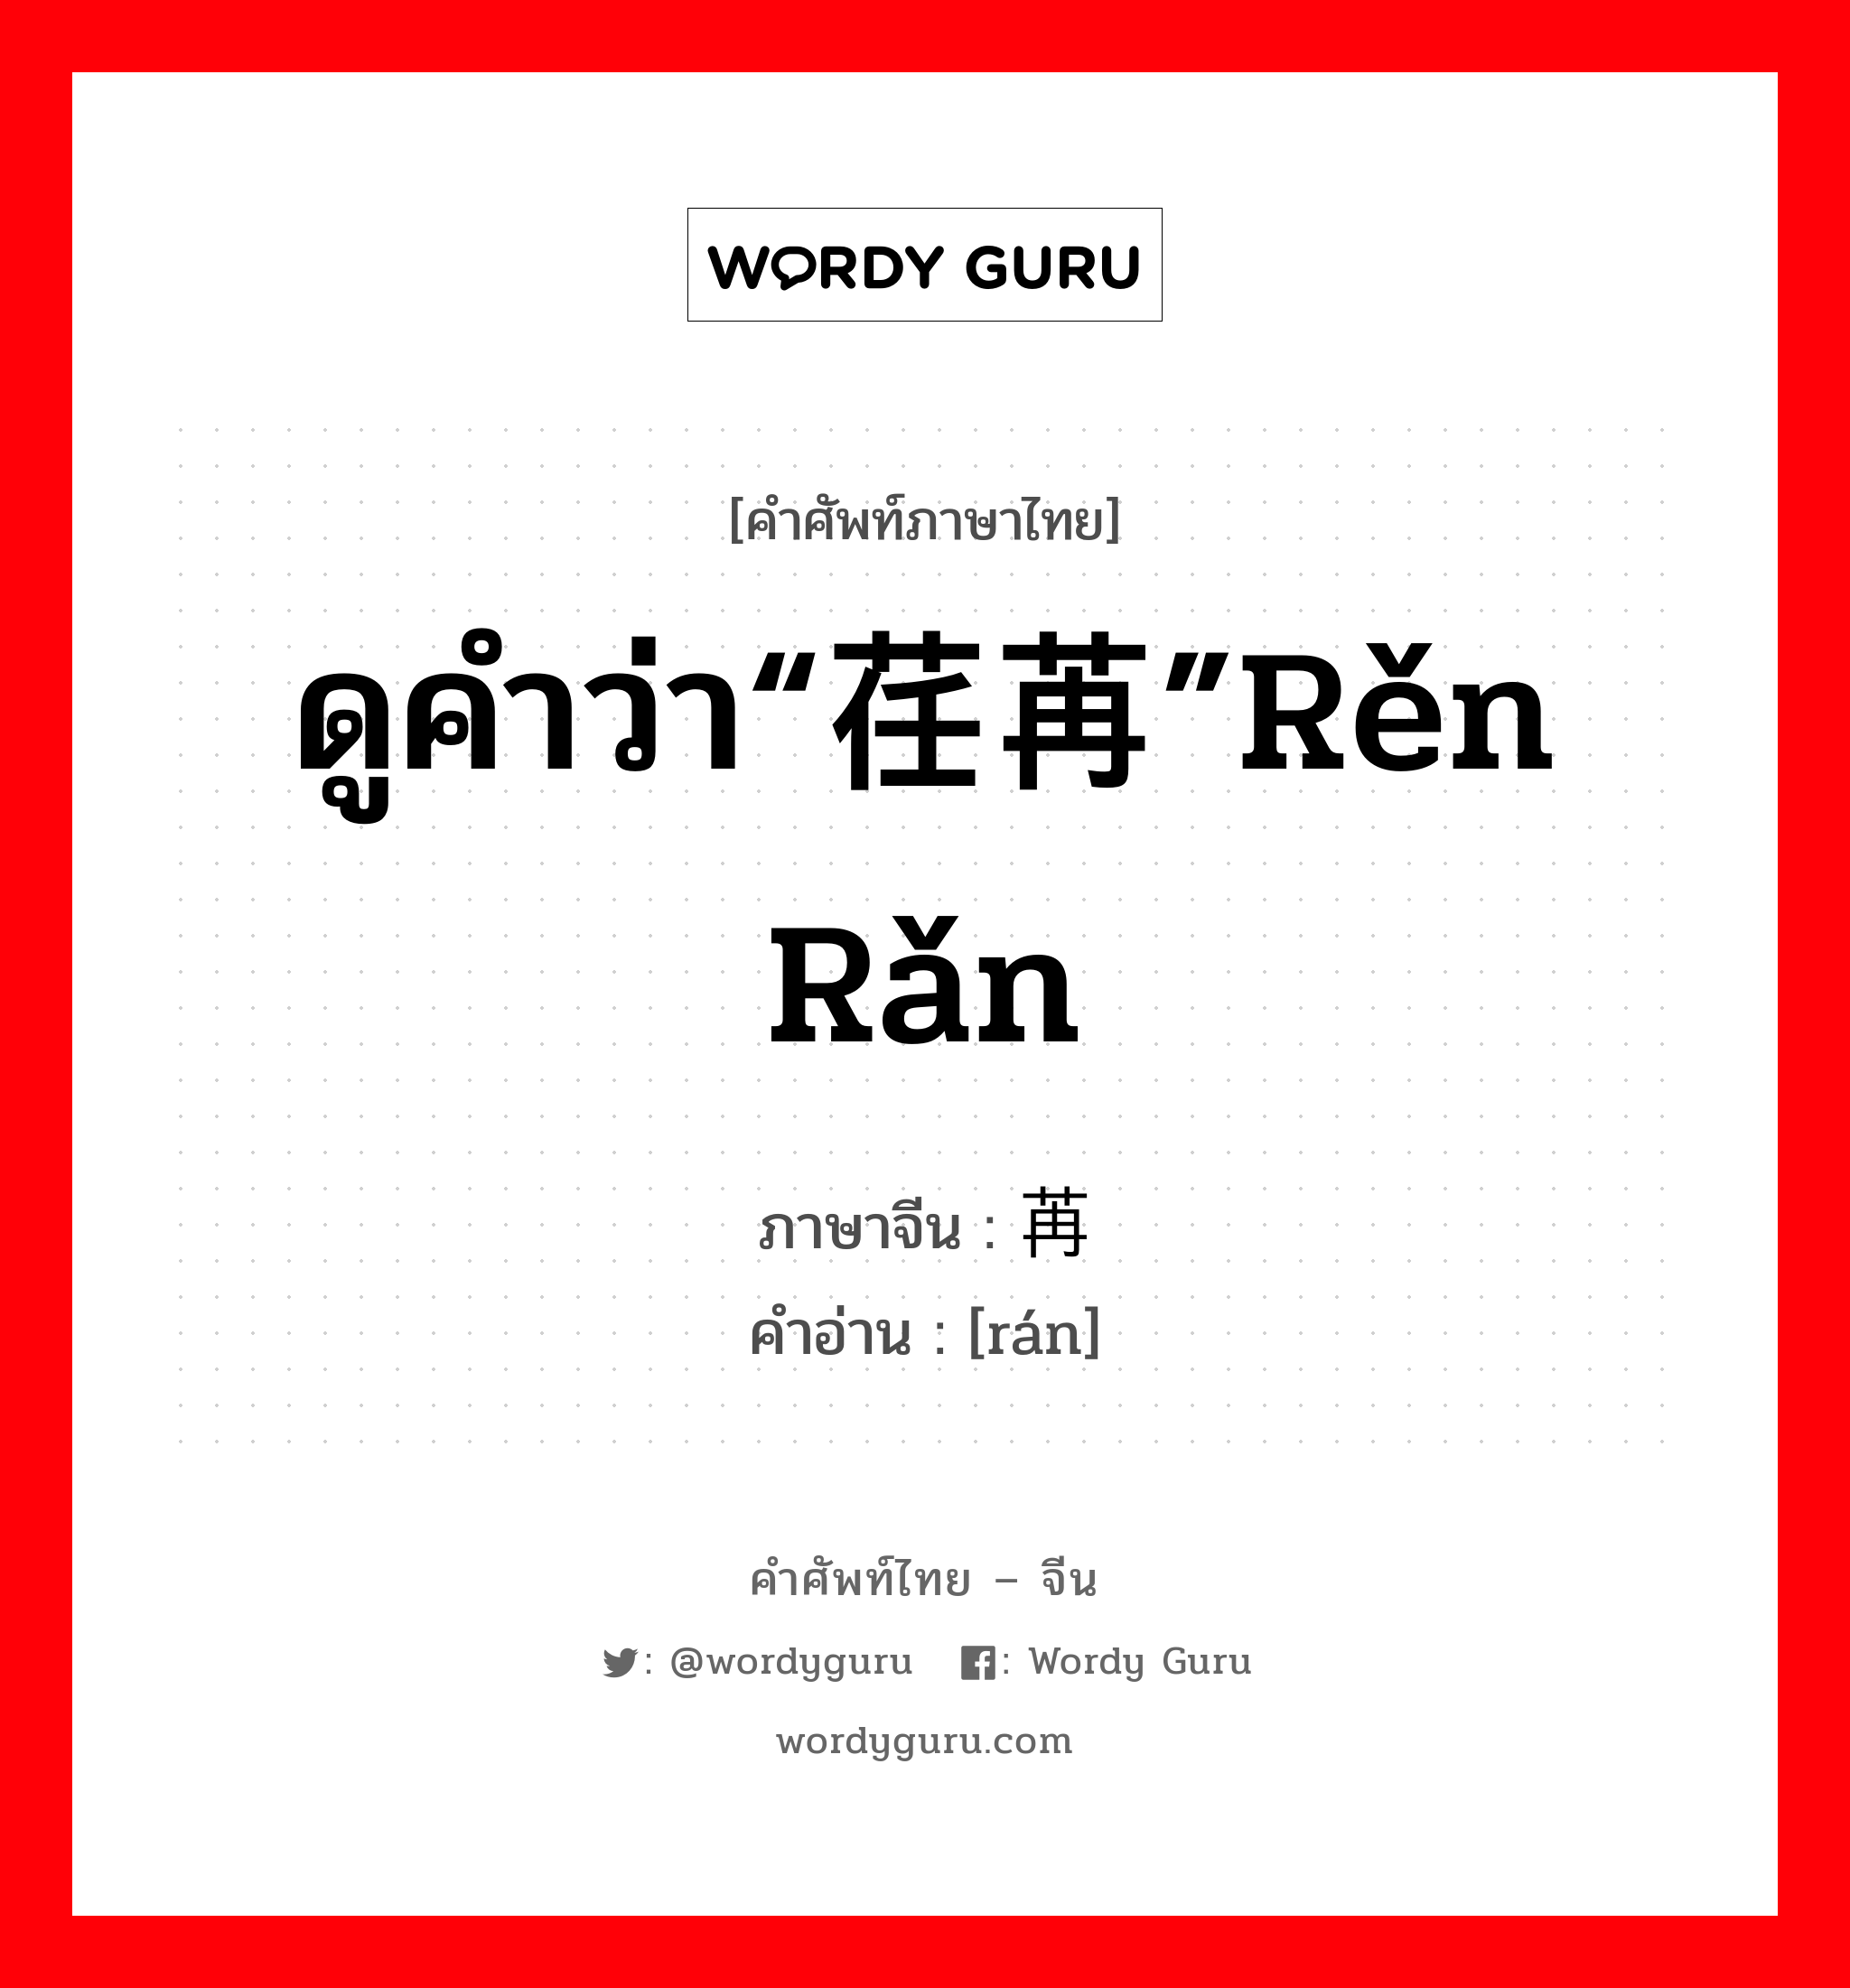 ดูคำว่า“荏苒”rěn rǎn ภาษาจีนคืออะไร, คำศัพท์ภาษาไทย - จีน ดูคำว่า“荏苒”rěn rǎn ภาษาจีน 苒 คำอ่าน [rán]